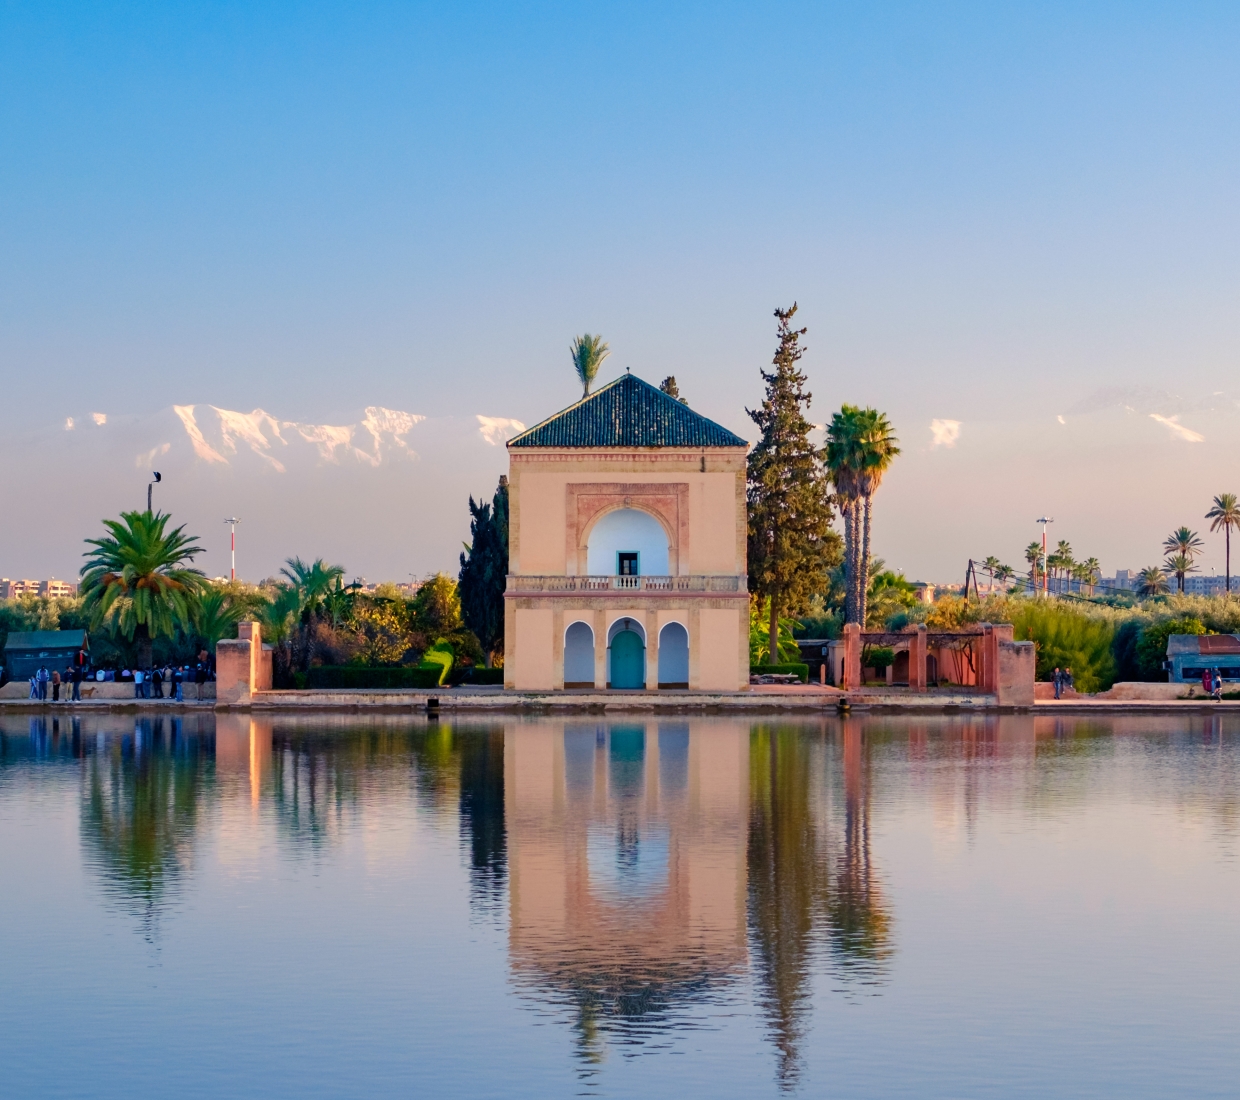 Seleção dos melhores e mais bonitos hotéis e casas de férias em Marrakexe